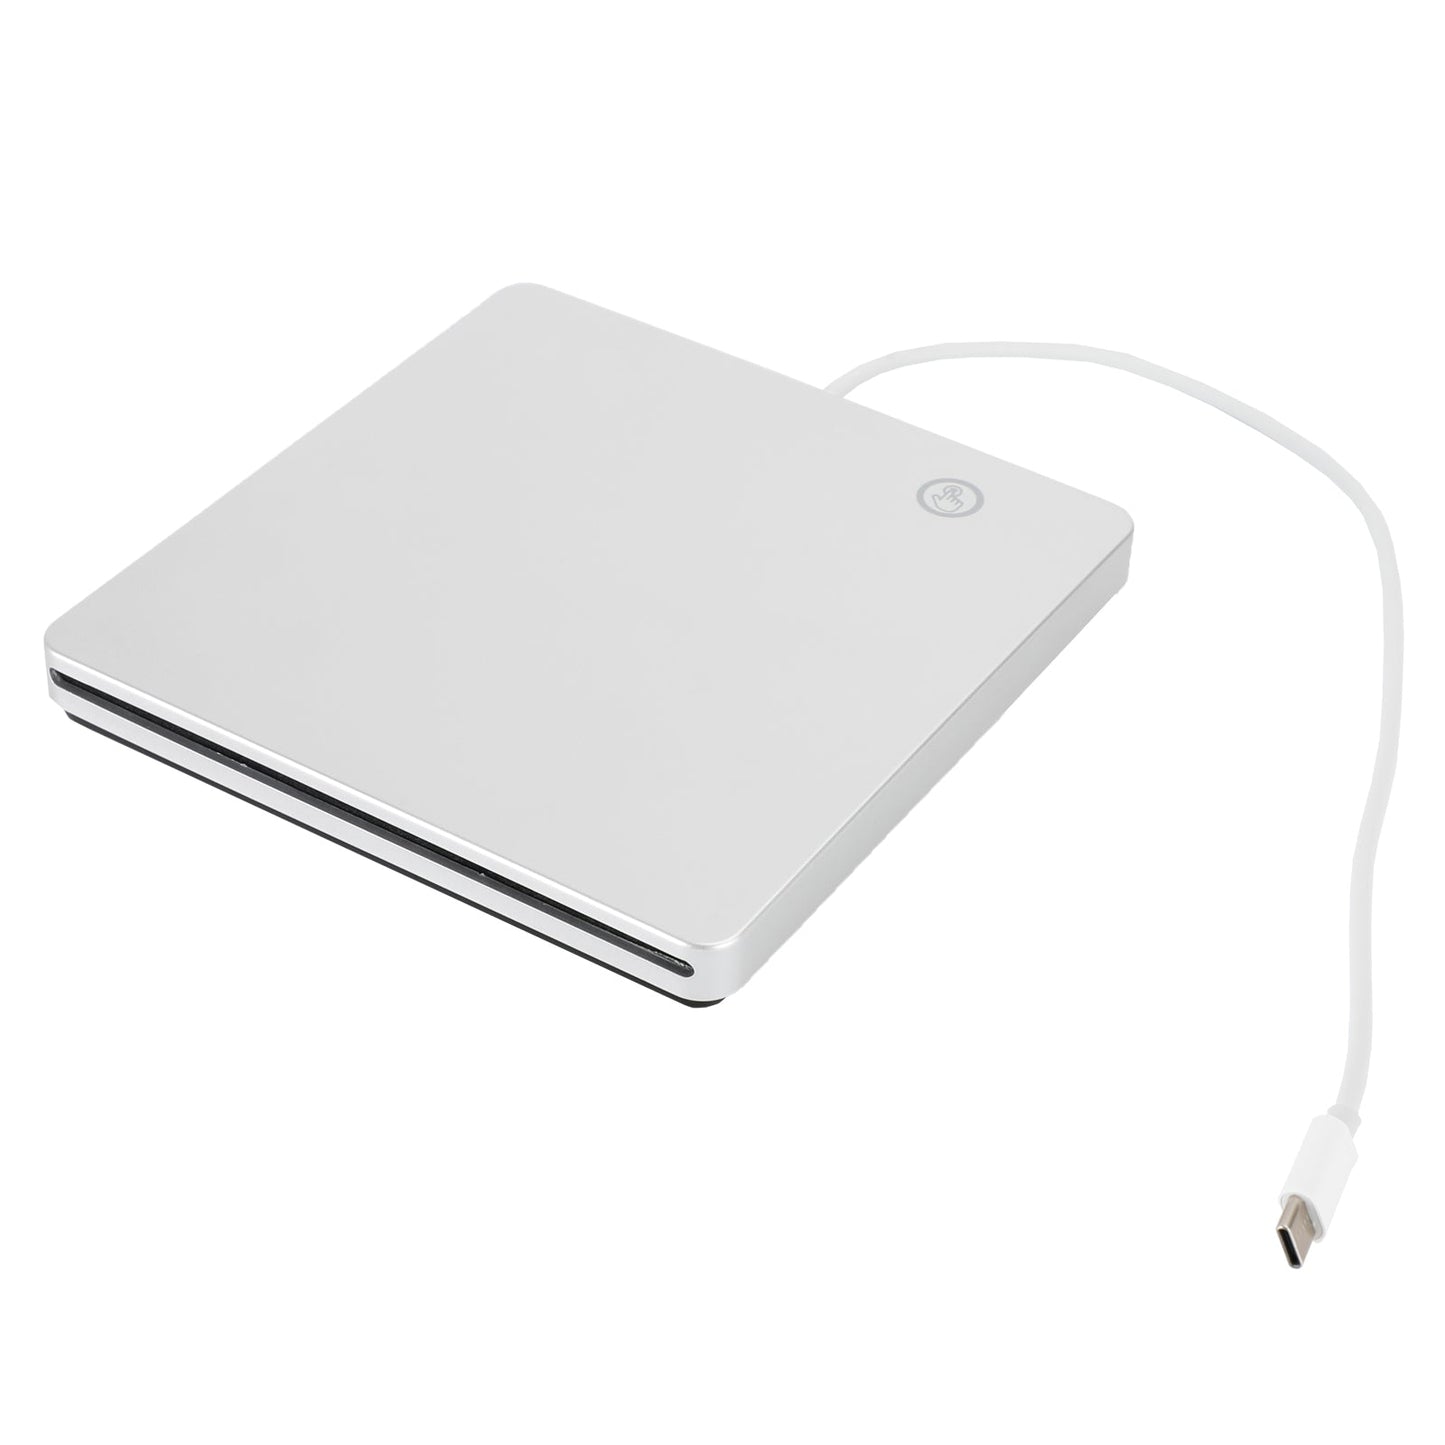 Type-C Lecteur Combo DVD Lecteur Blu Ray Portable Externe pour Win10 Mac OS